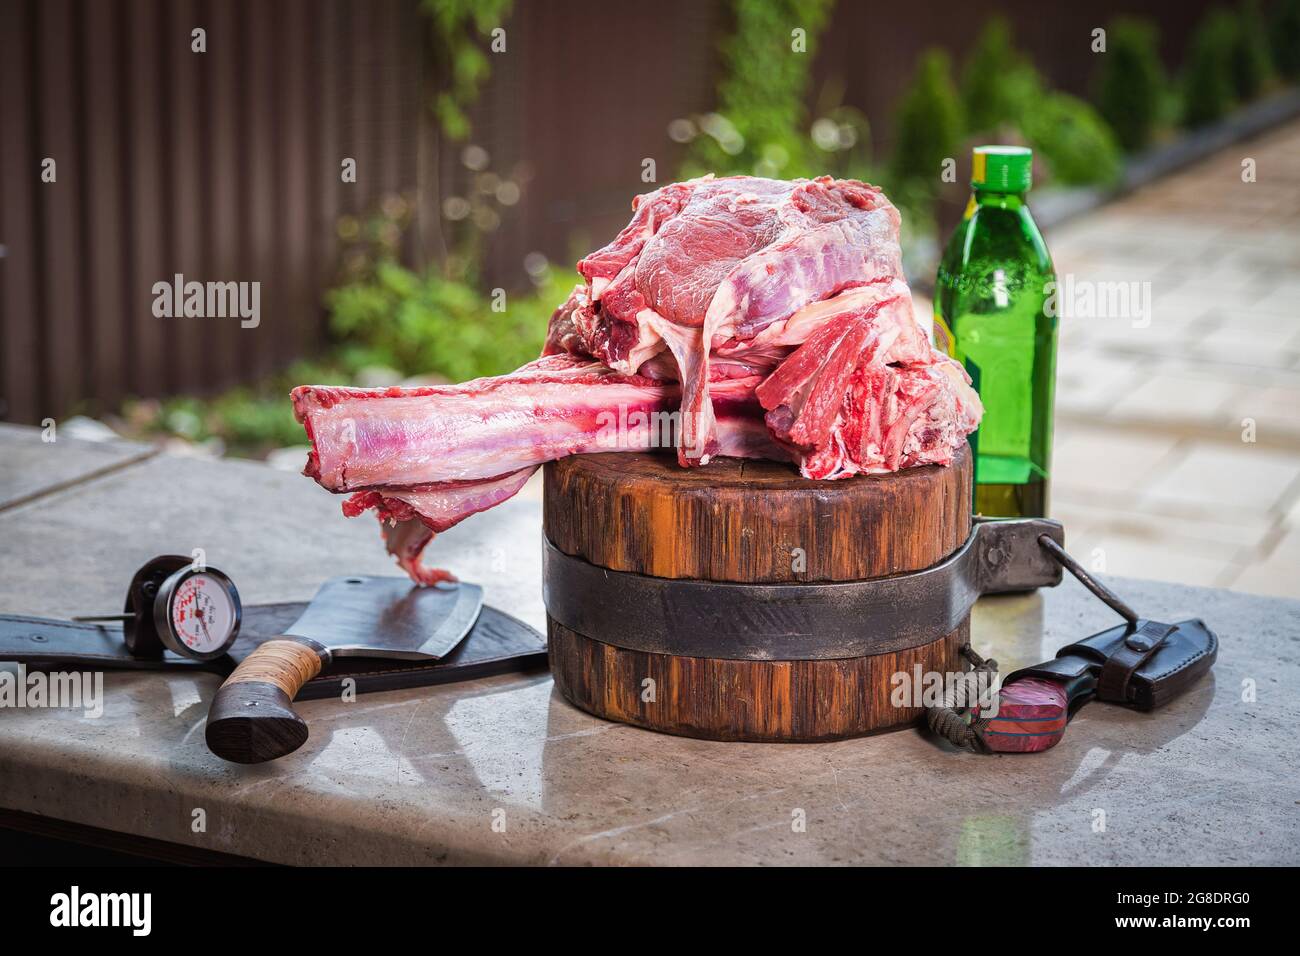 Viande crue sur une terrasse pour faire le déjeuner. Viande fraîche sur une planche à découper avec de l'huile d'olive et un couteau. Gros plan. Banque D'Images